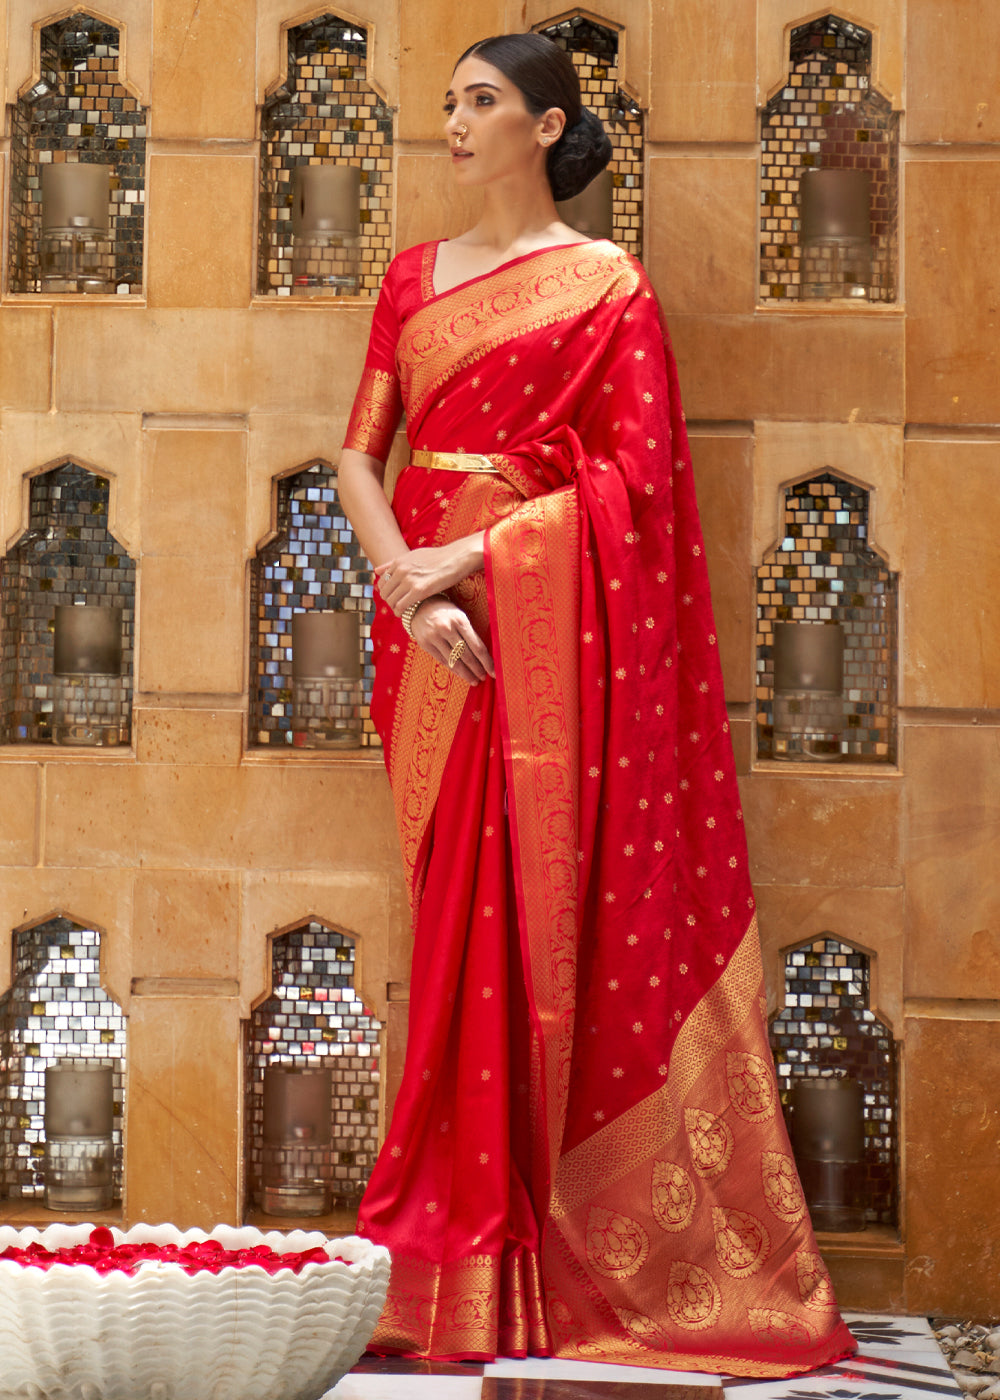 New Years Edit: Bridal Red And Gold Woven Kanjivaram Saree – Zari ...